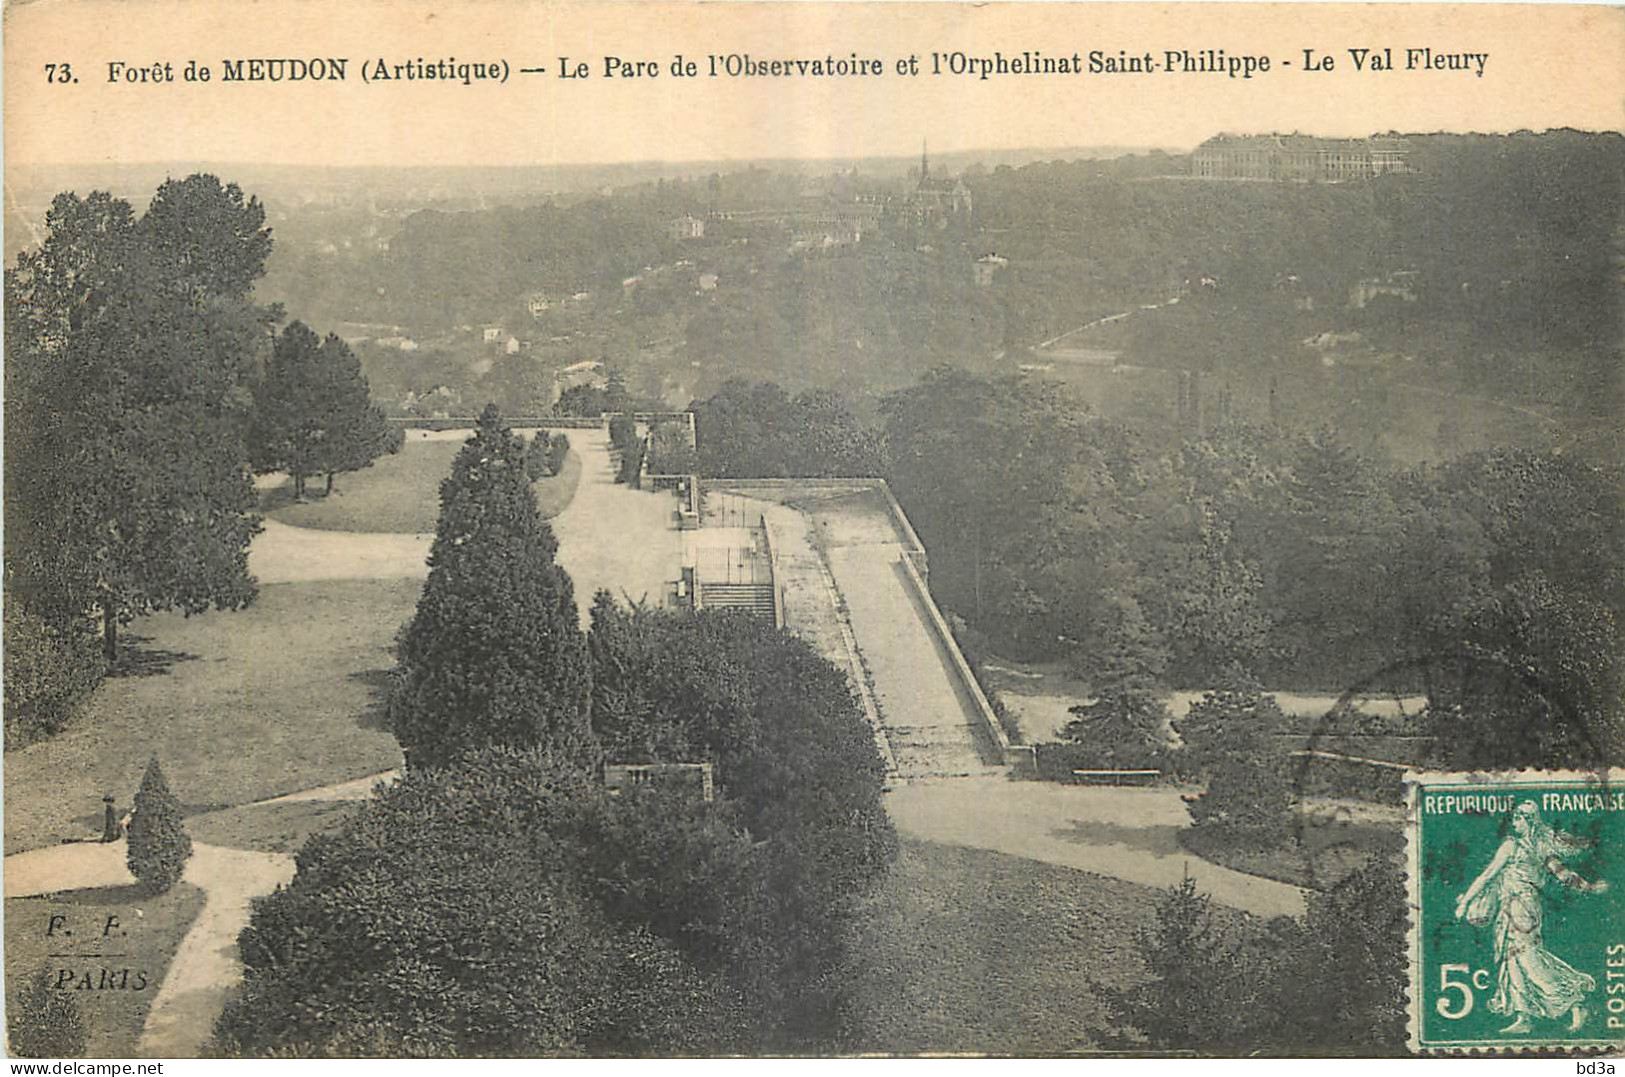 92 - FORET DE MEUDON - LE PARC DE L'OBSERVATOIRE ET L'ORPHELINAT SAINT PHILIPPE - LE VAL FLEURY - F. Fleury Paris - 73 - Meudon